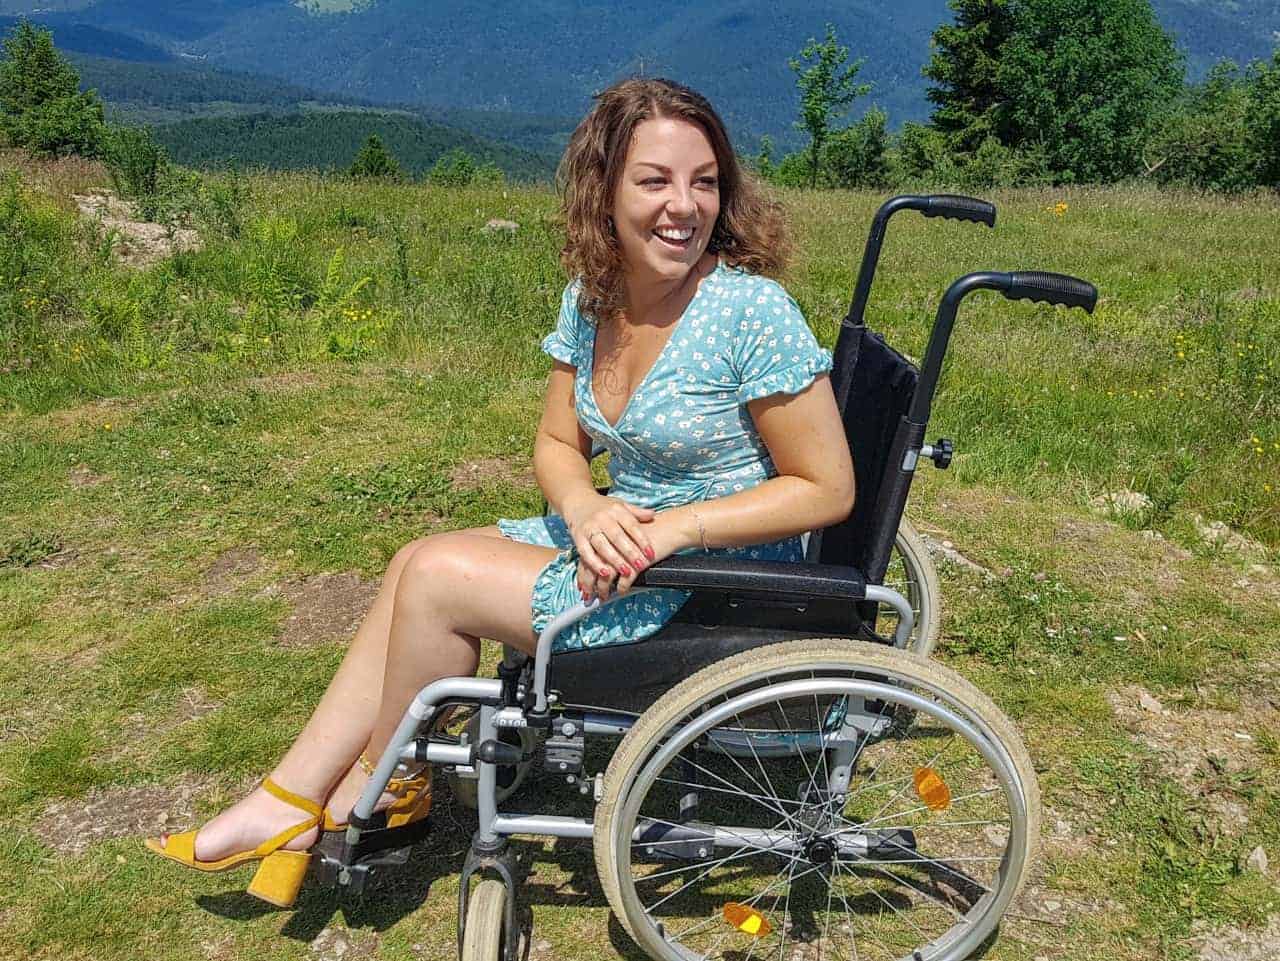 Annefleur achterom kijkend in de natuur in rolstoel